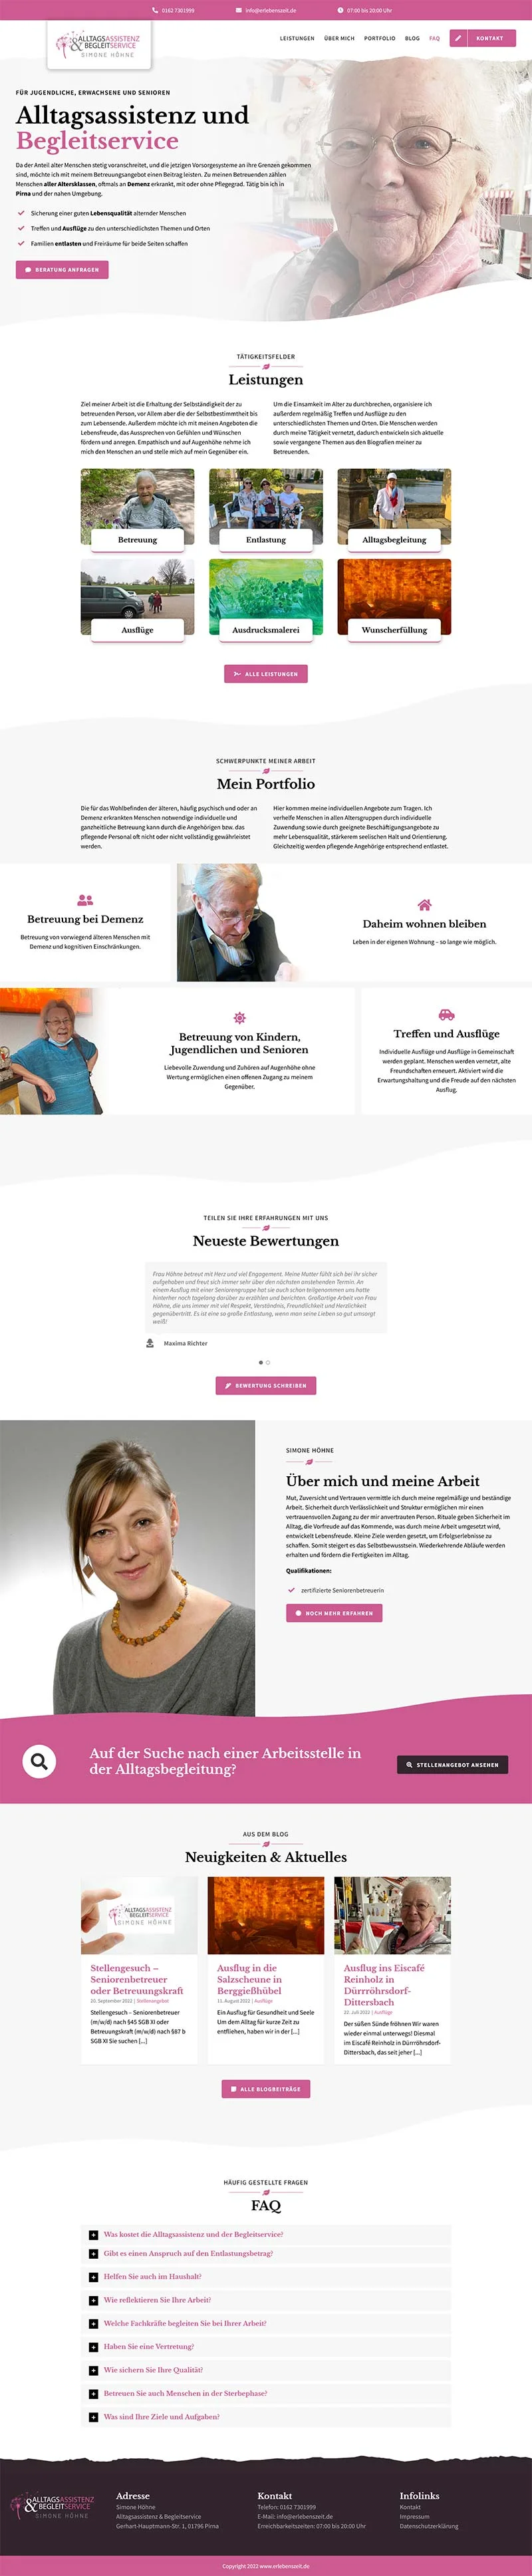 Alltagsassistenz & Begleitservice Simone Höhne - Screenshot Fullsize Startseite